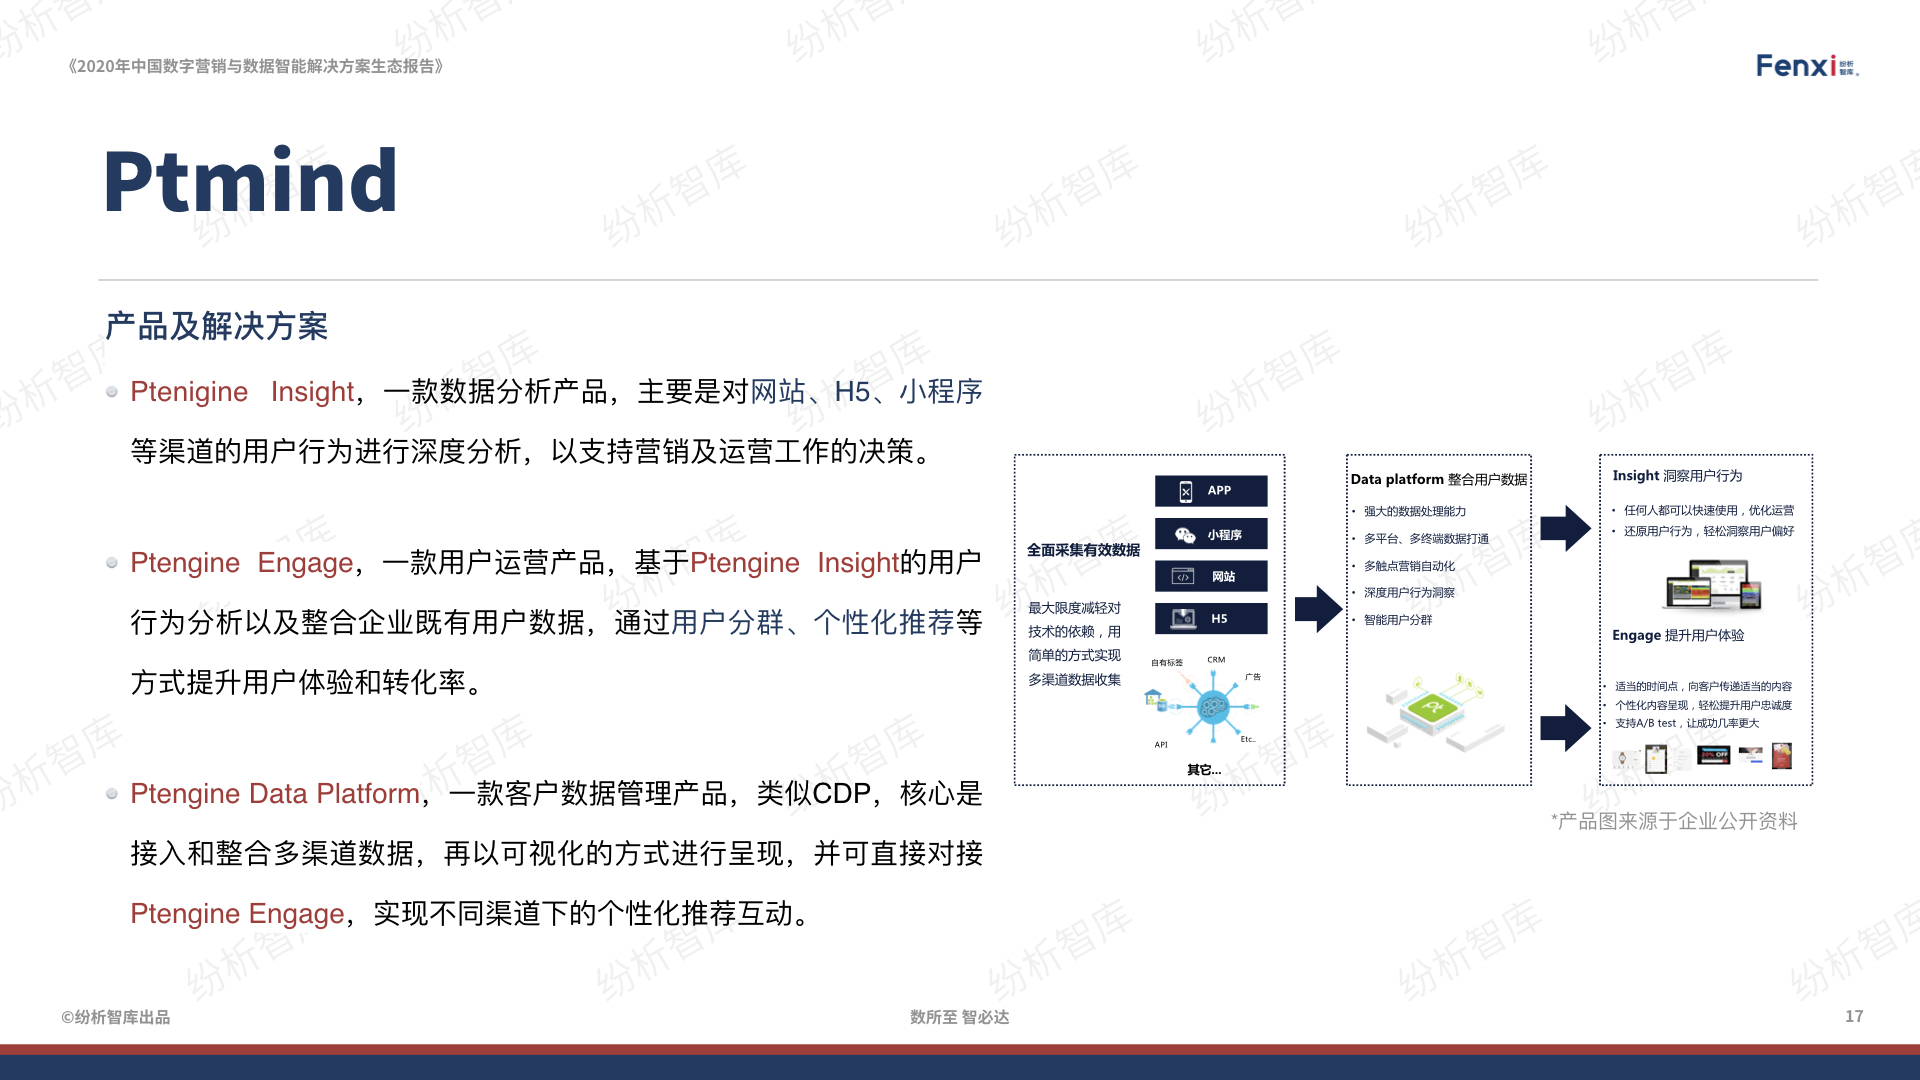 【V8】《2020年中国数字营销与数据智能解决方案生态图报告》0106.017.jpeg